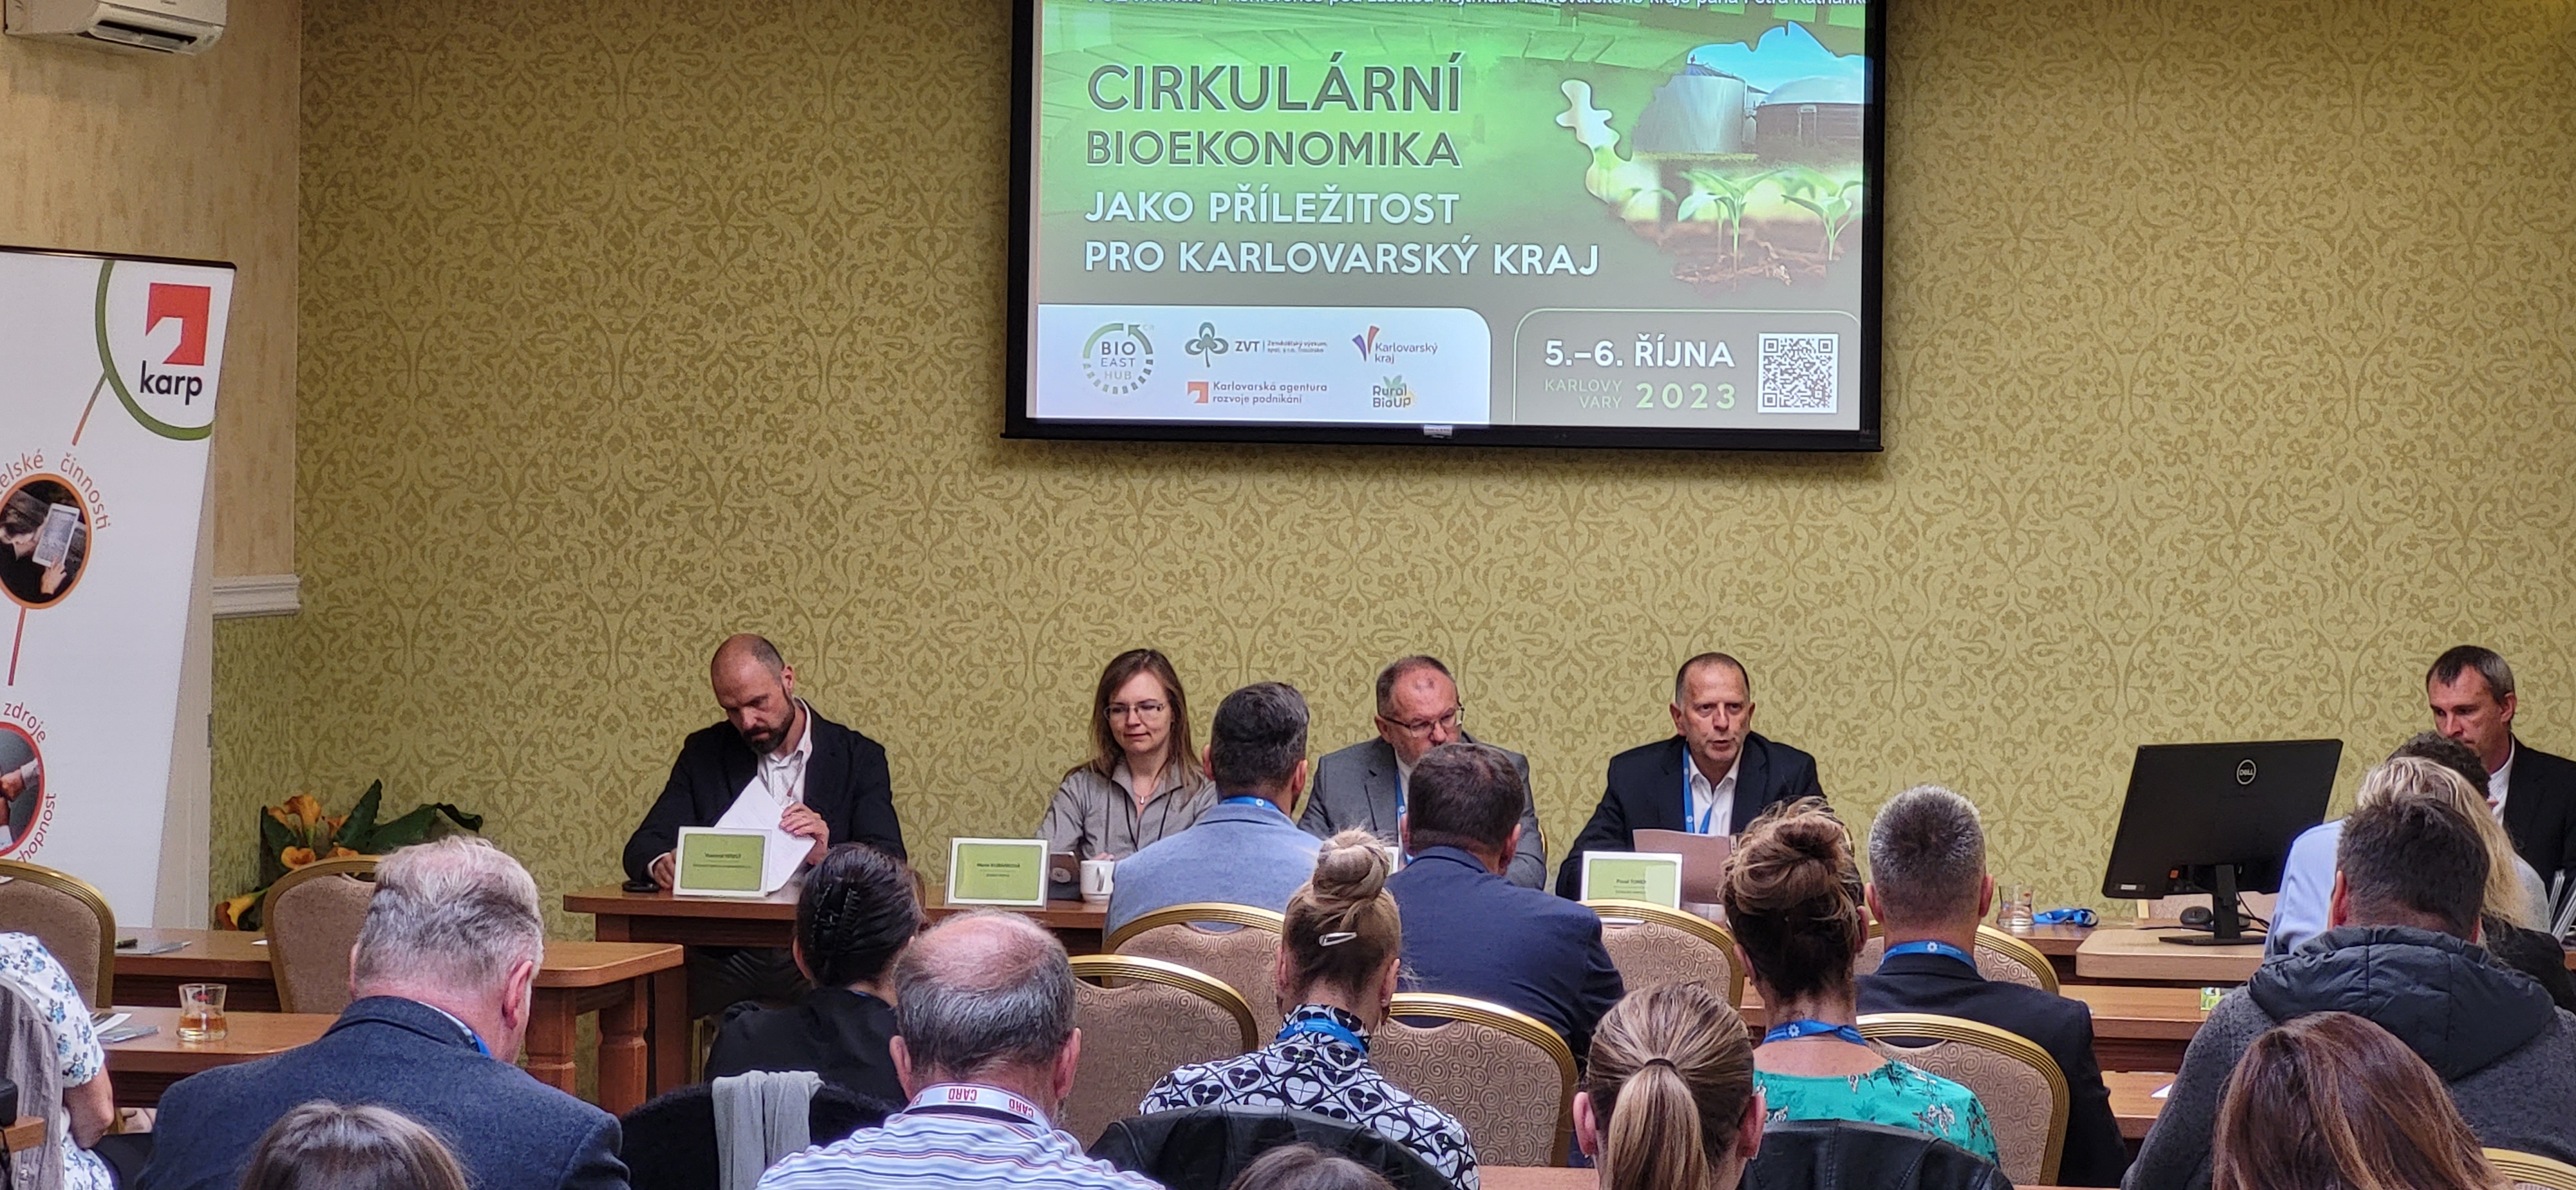 V Karlových Varech proběhla konference na téma Cirkulární bioekonomika